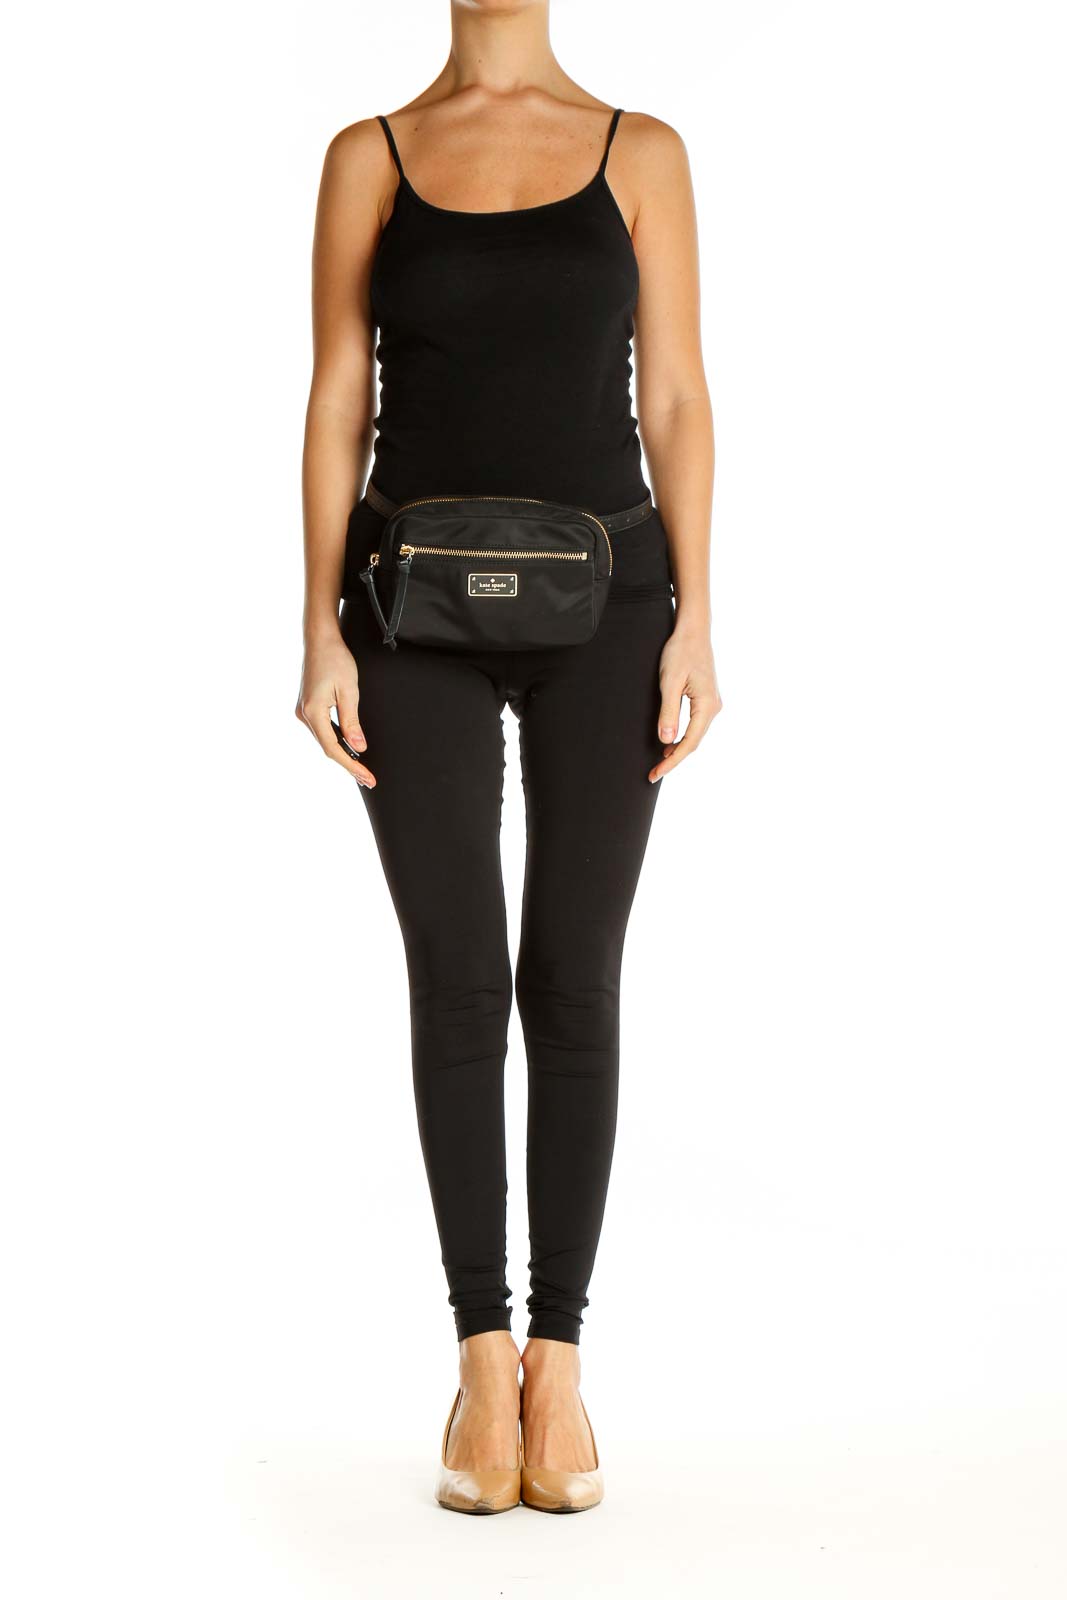 Soledad Leather Belt Bag in Black, with Matte Black Hardware